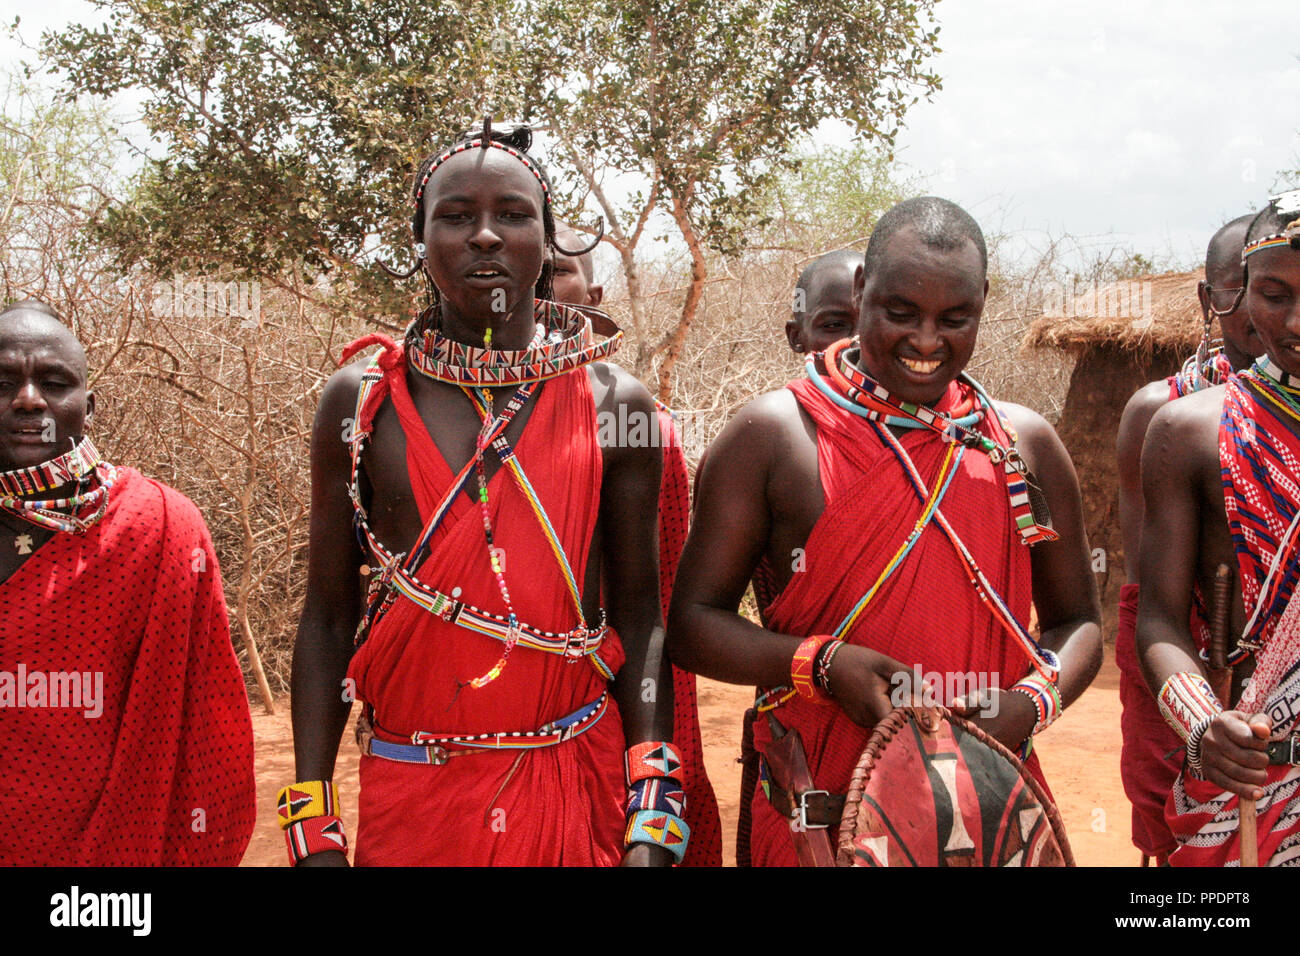 Au Kenya, le parc national de Tsavo, 03/20/2018 - gens Masai dans leur village en costume traditionnel Banque D'Images